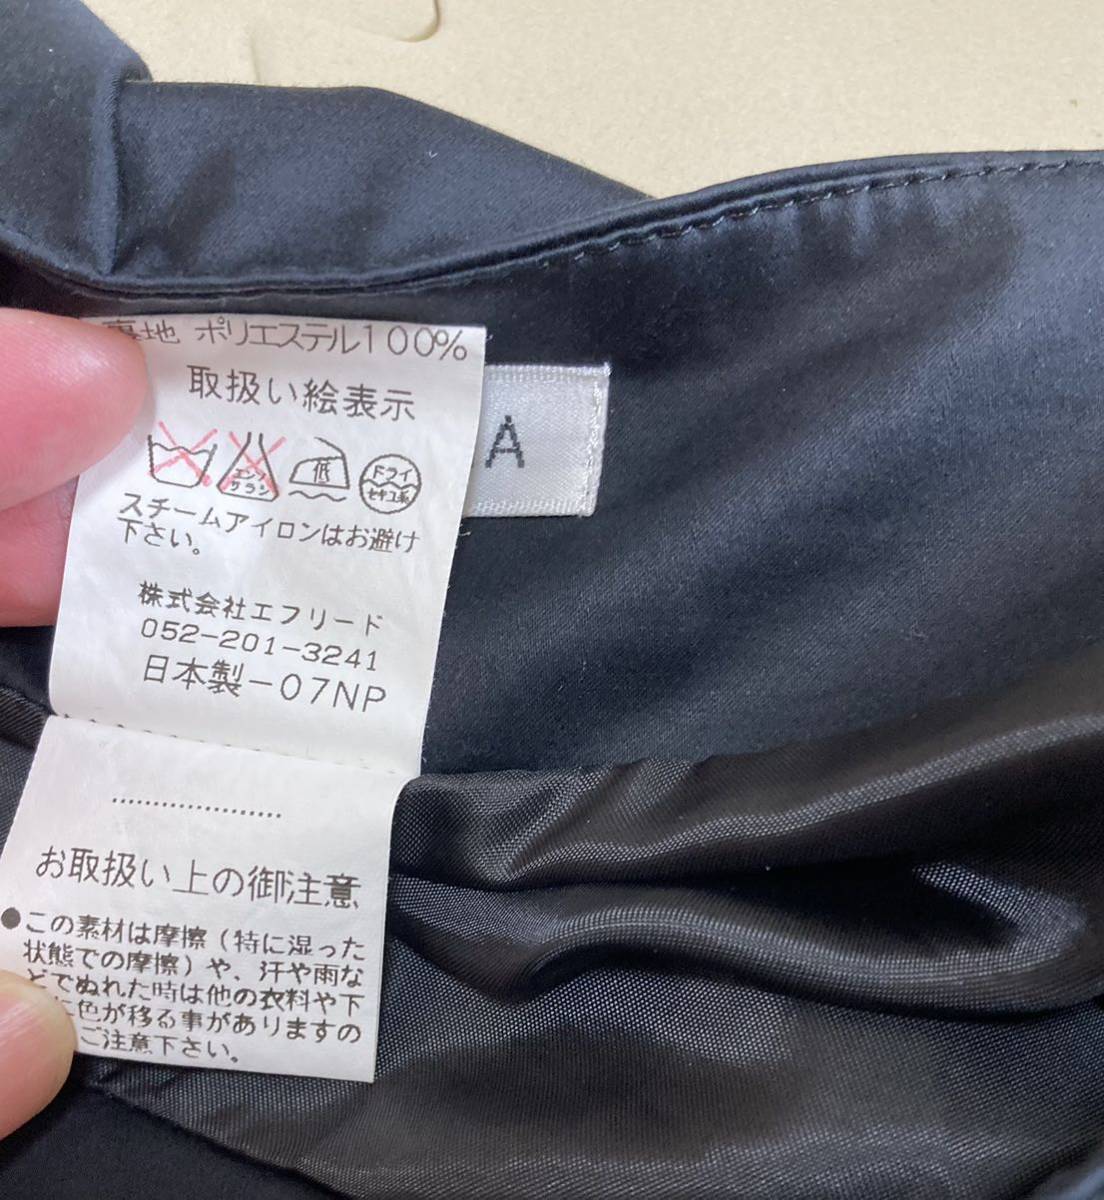 【日本製】アンナルナ、黒スーツ、11号、膝丈長さ、フォーマル_画像9